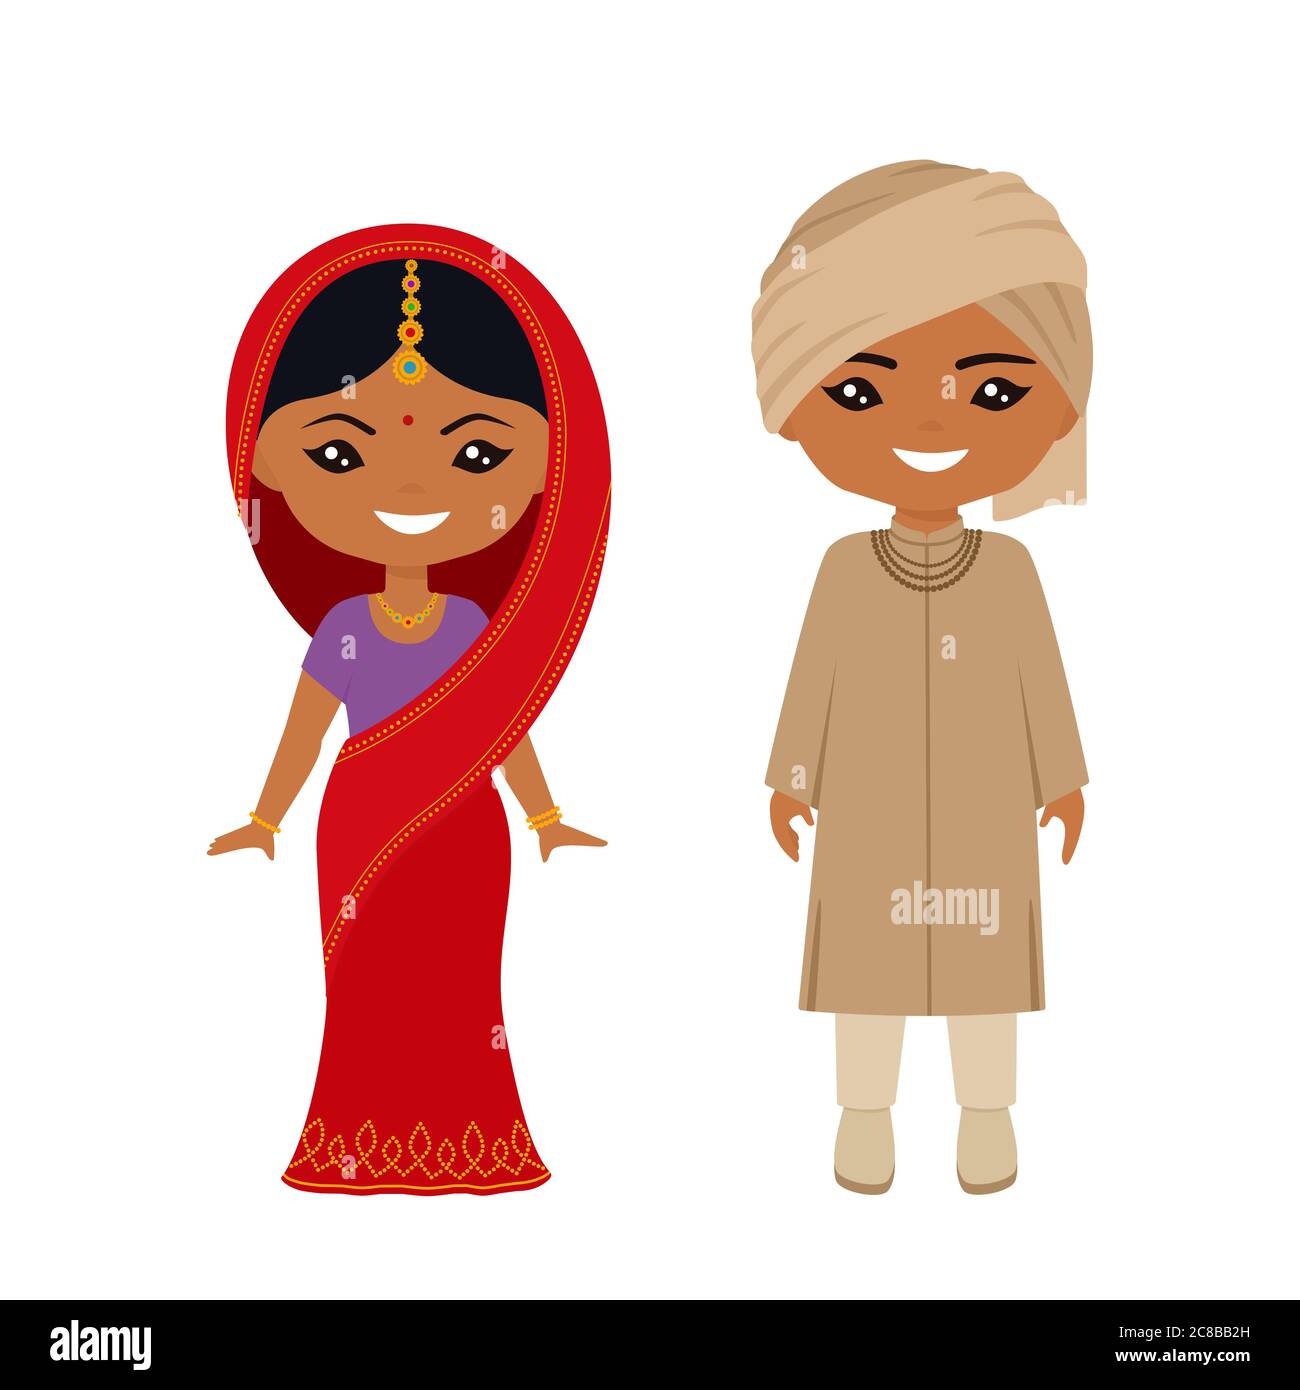 Simpatici personaggi chibi in costume nazionale indiano. Stile cartoon piatto. Illustrazione vettoriale Foto Stock